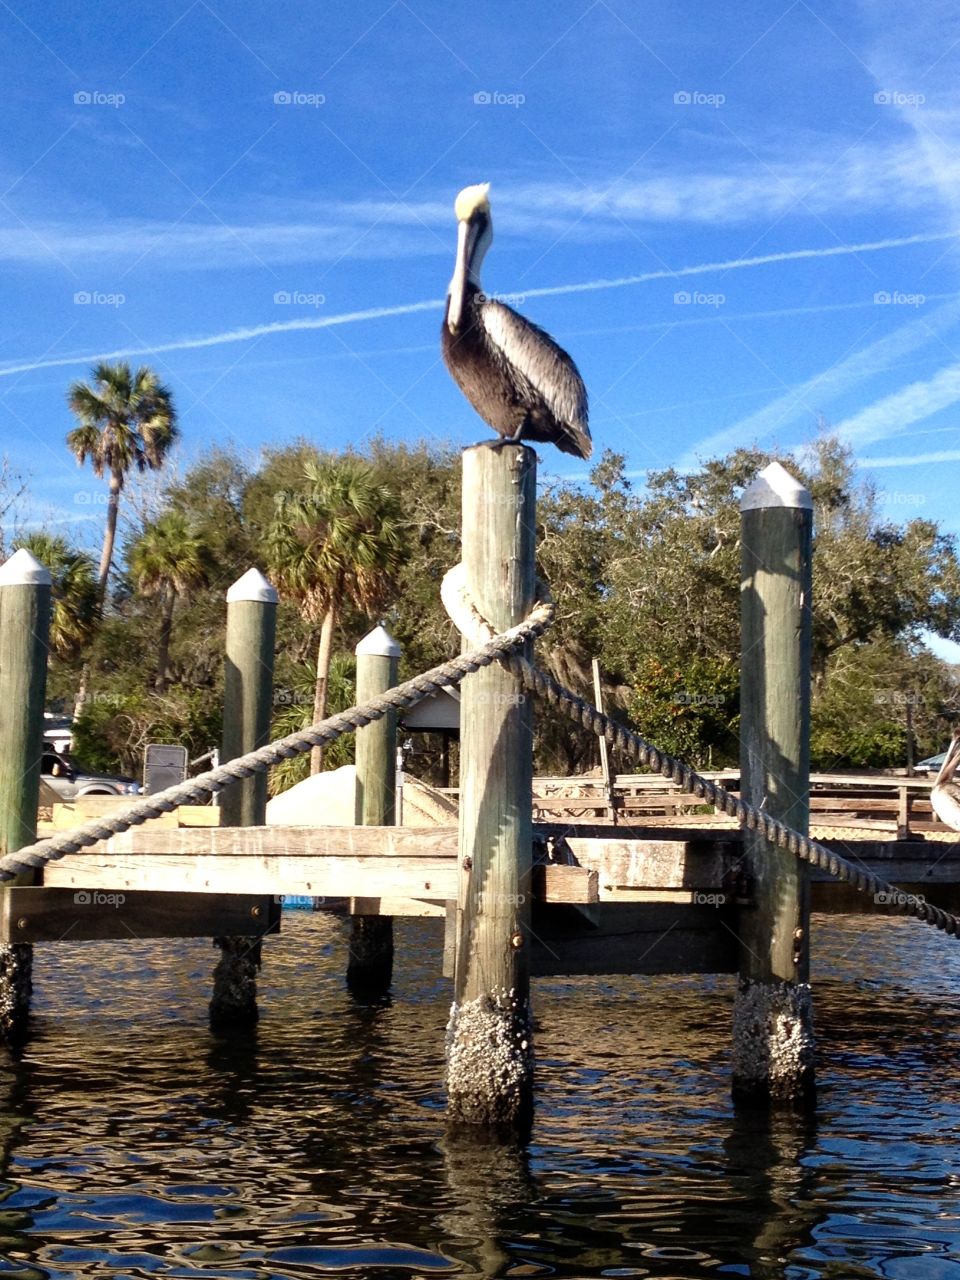 Pelican on alert